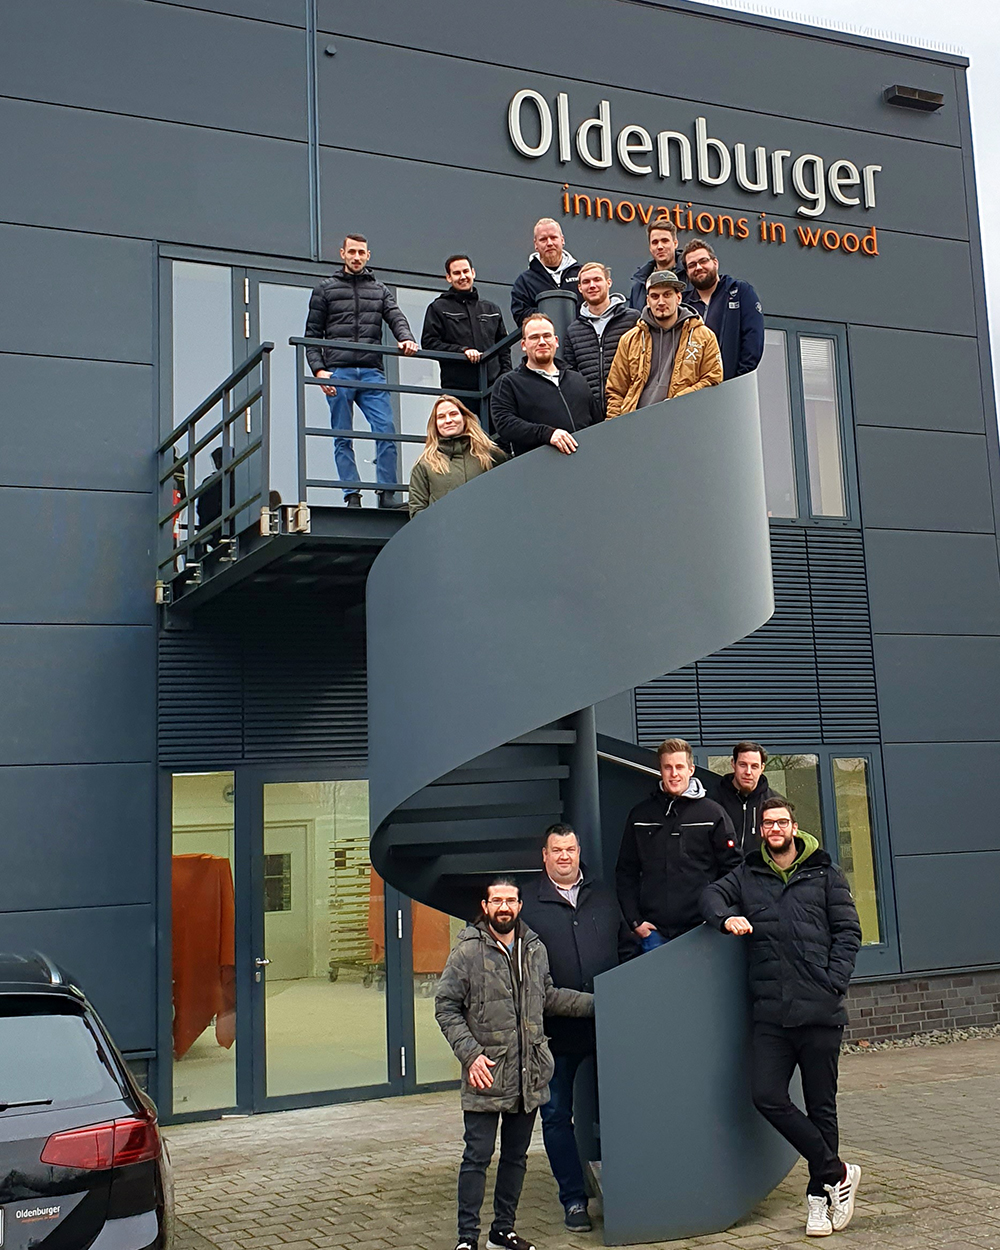 master carpenters visit Oldenburger